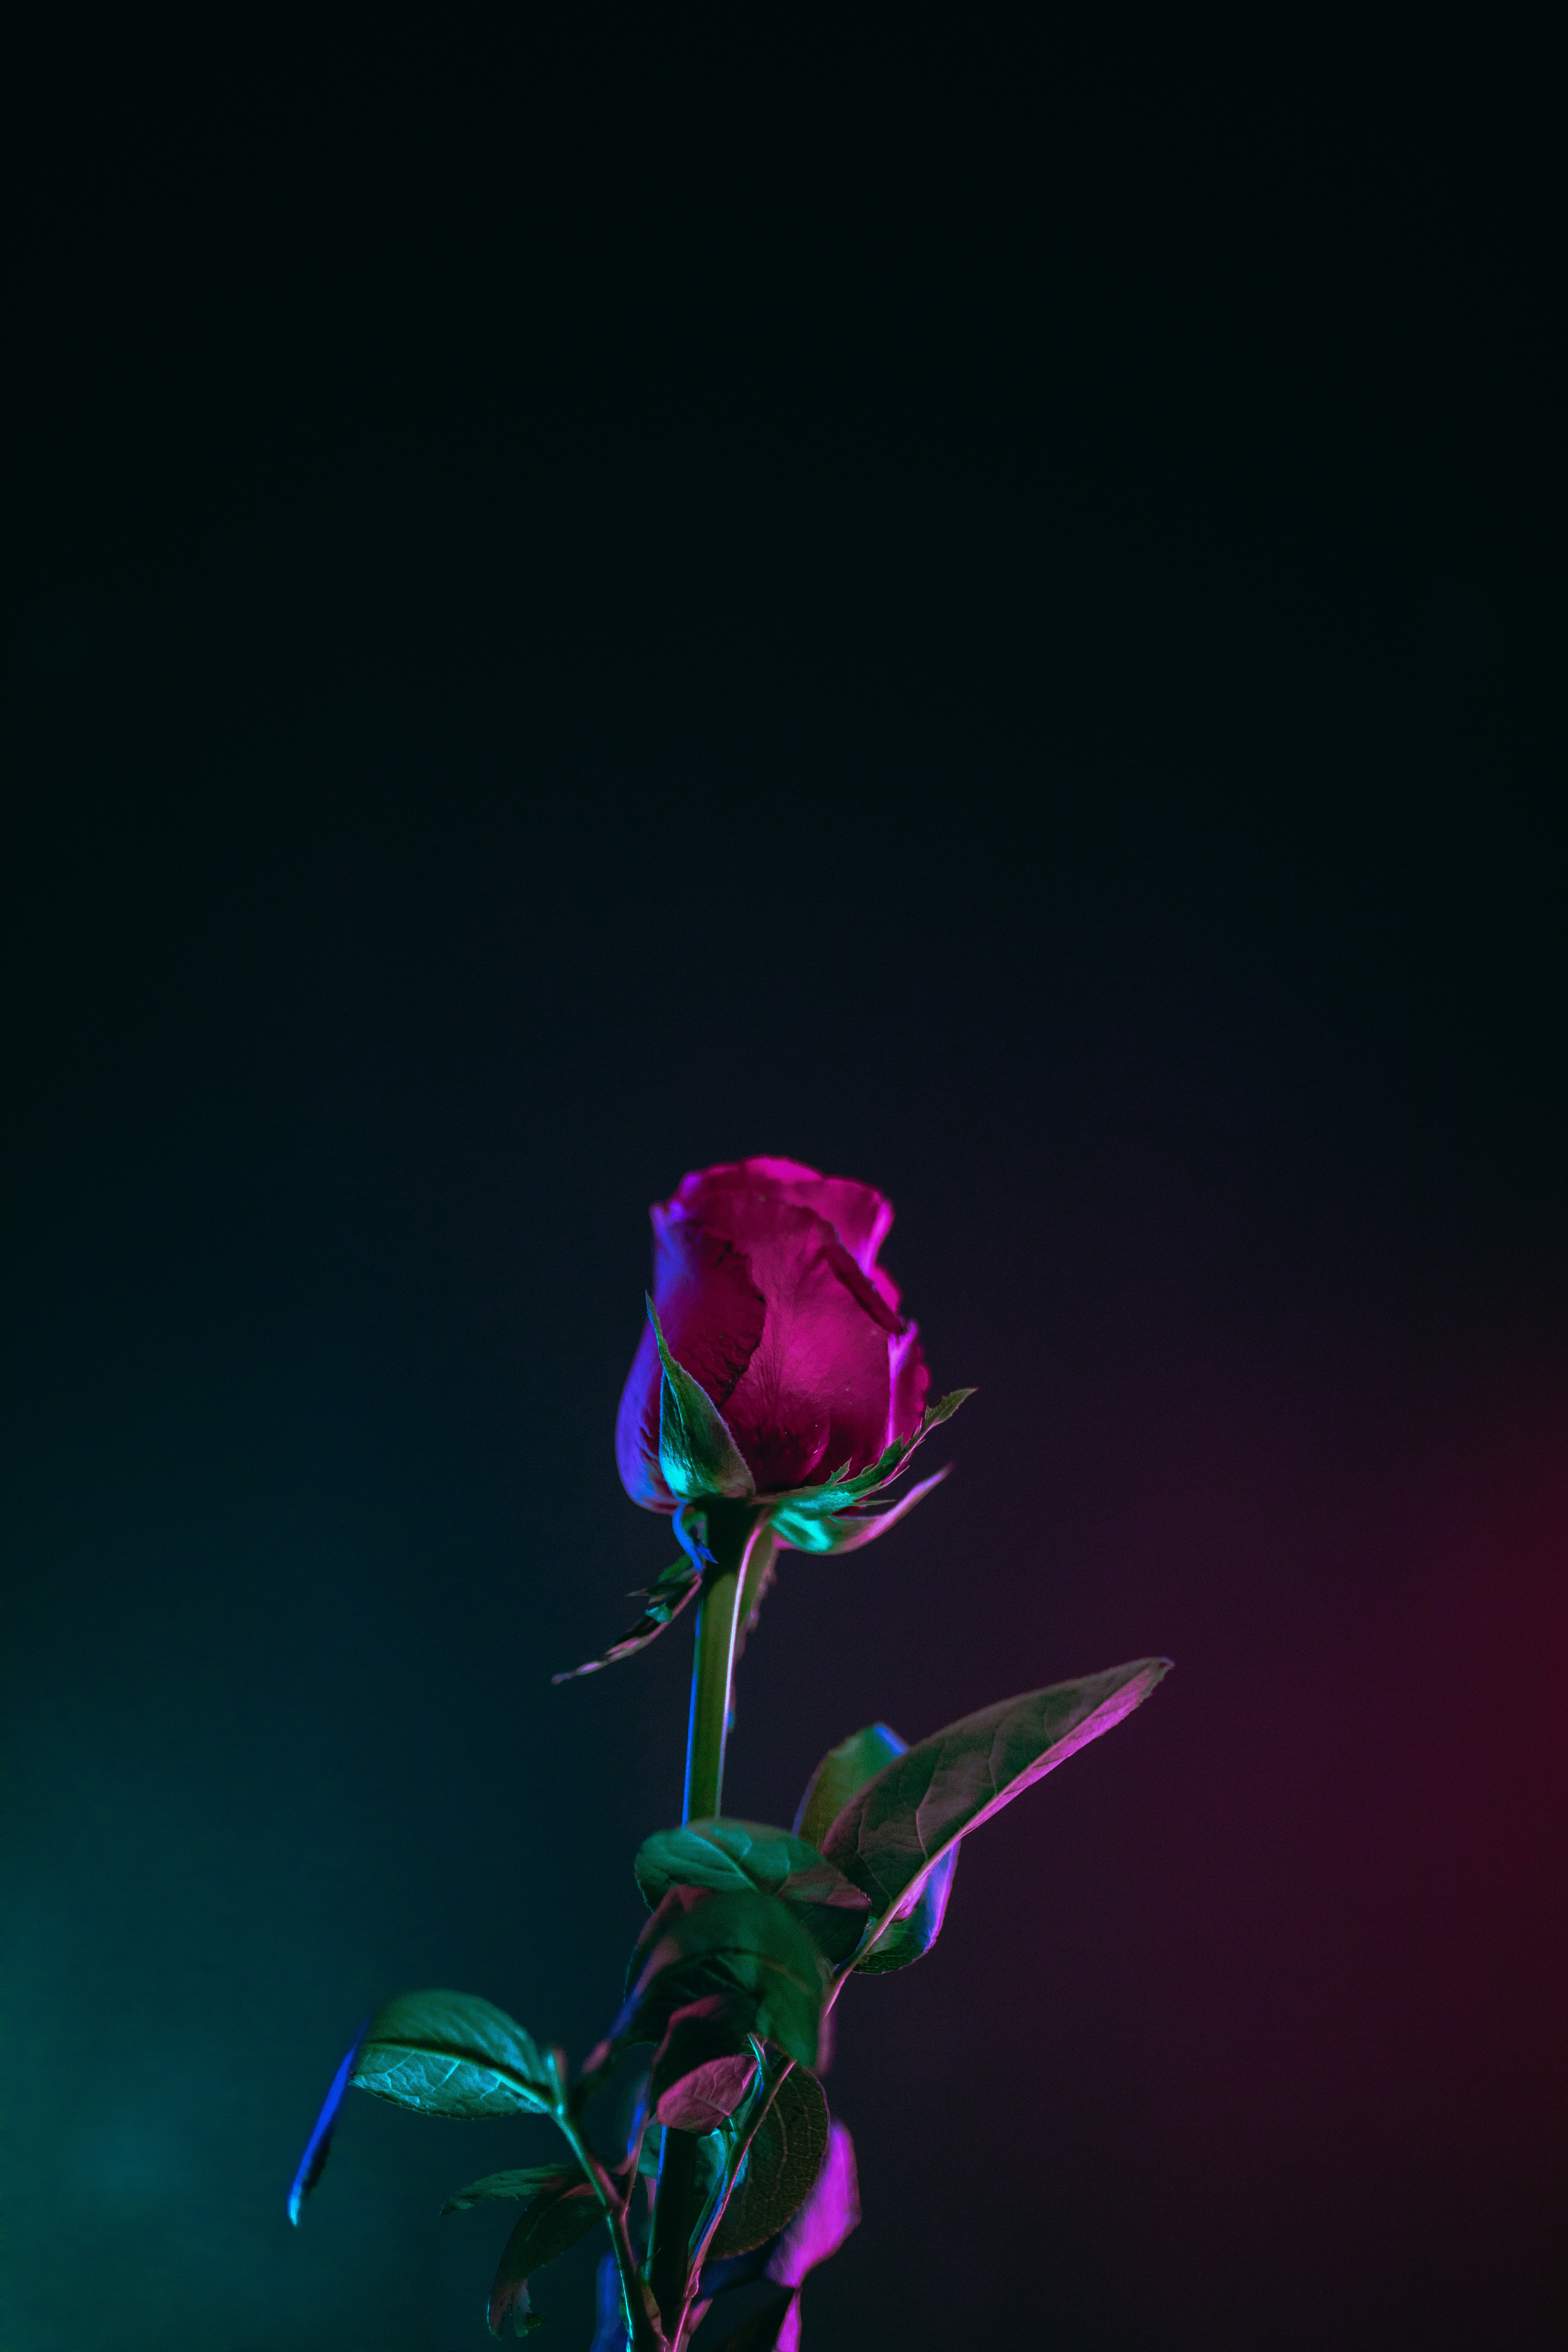 rose flower, dark background, leaves, flowers, rose, bud, stem, stalk Aesthetic wallpaper